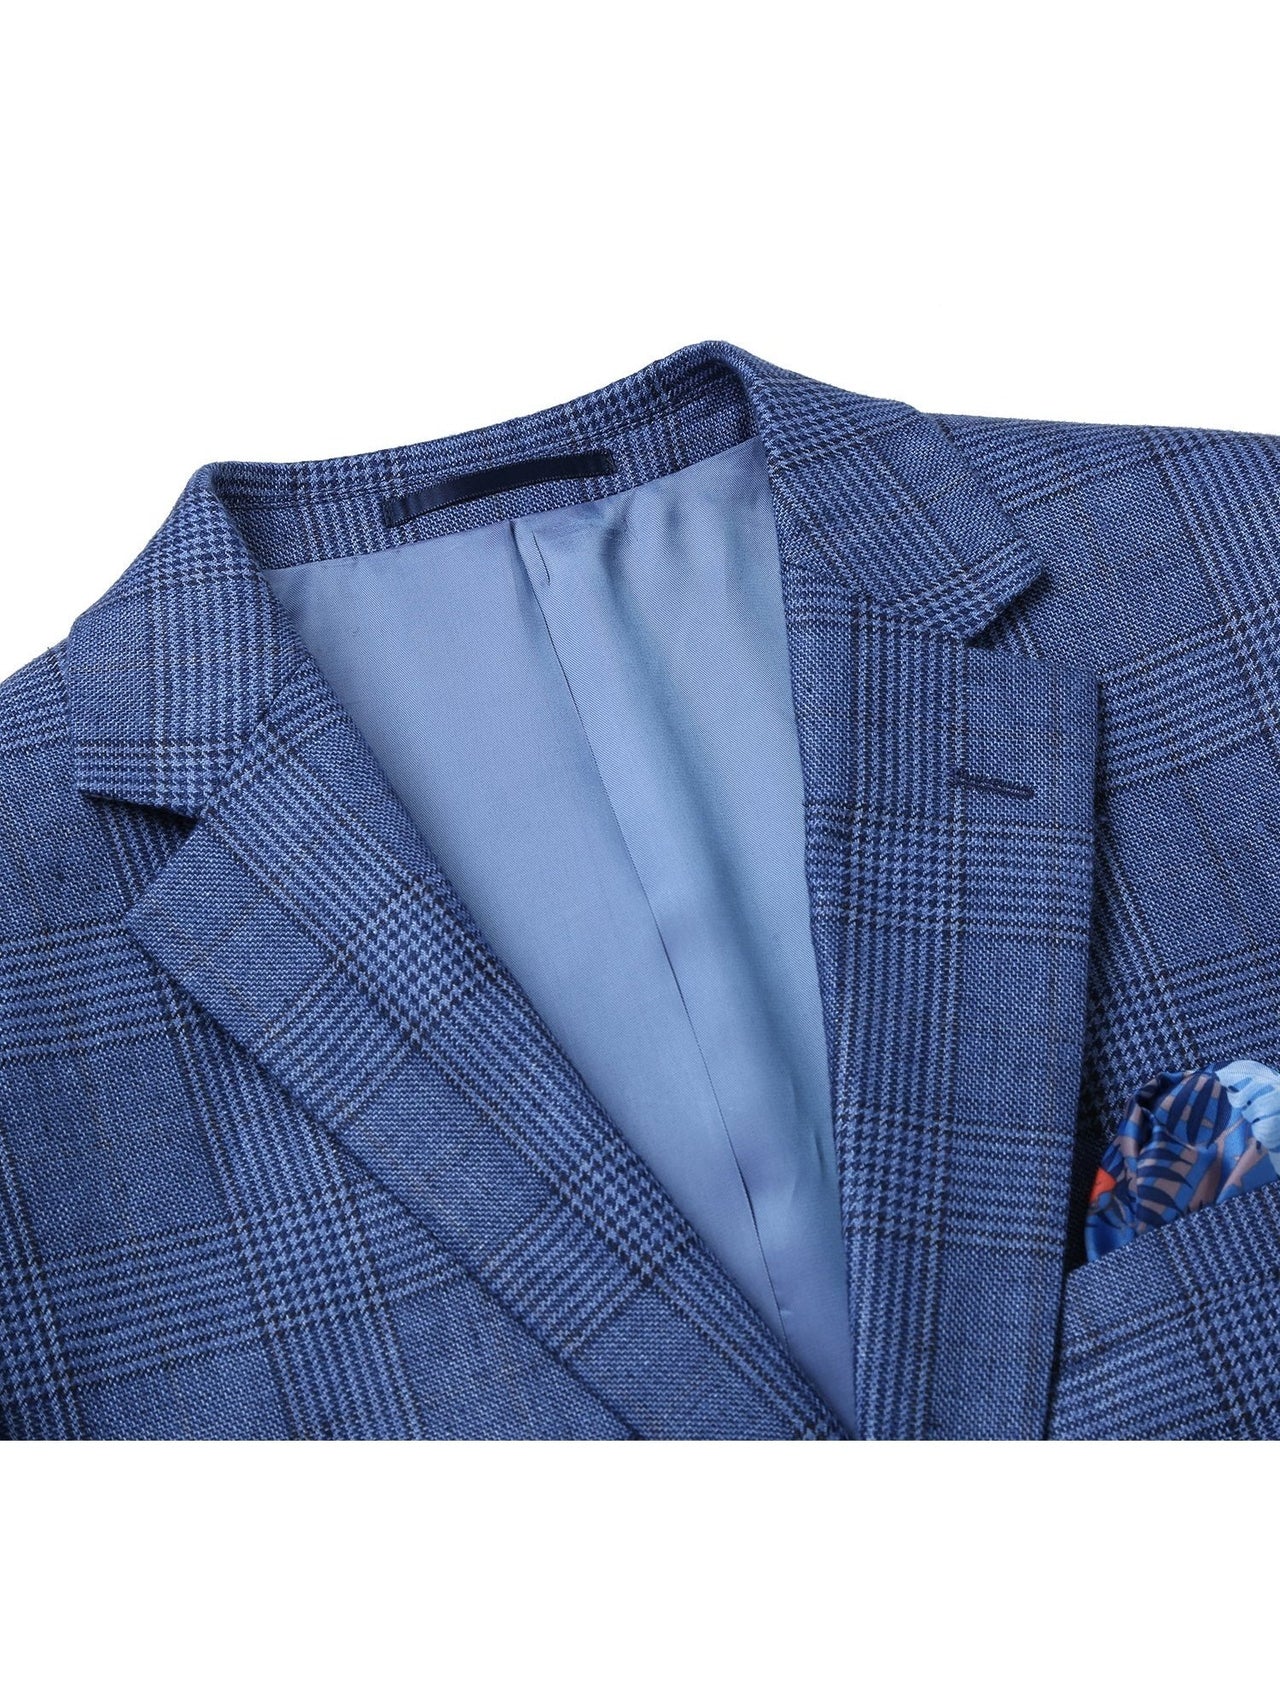 Men's Slim Fit Blazer Linen Sport Coat